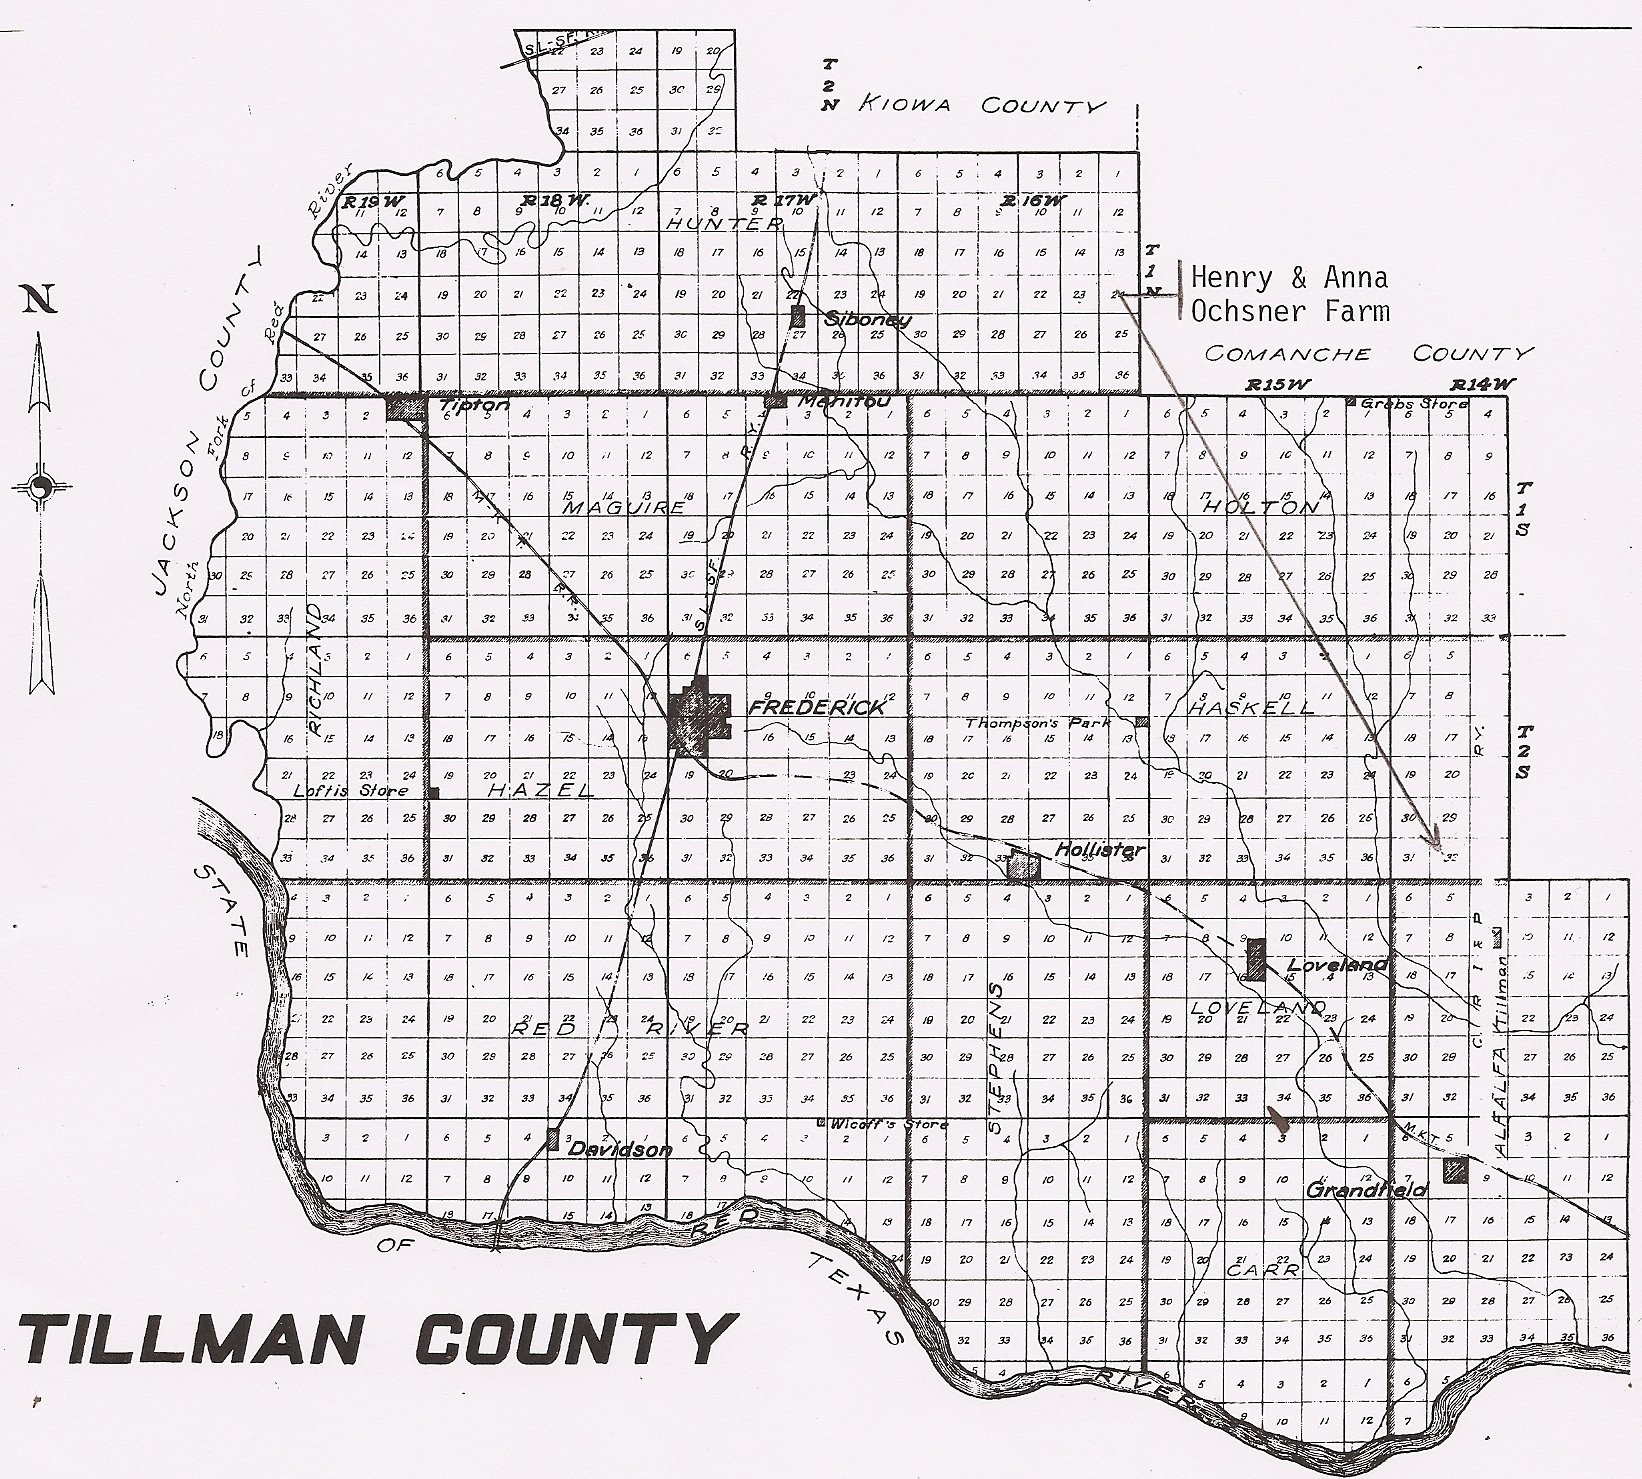 Tillman County, Oklahoma